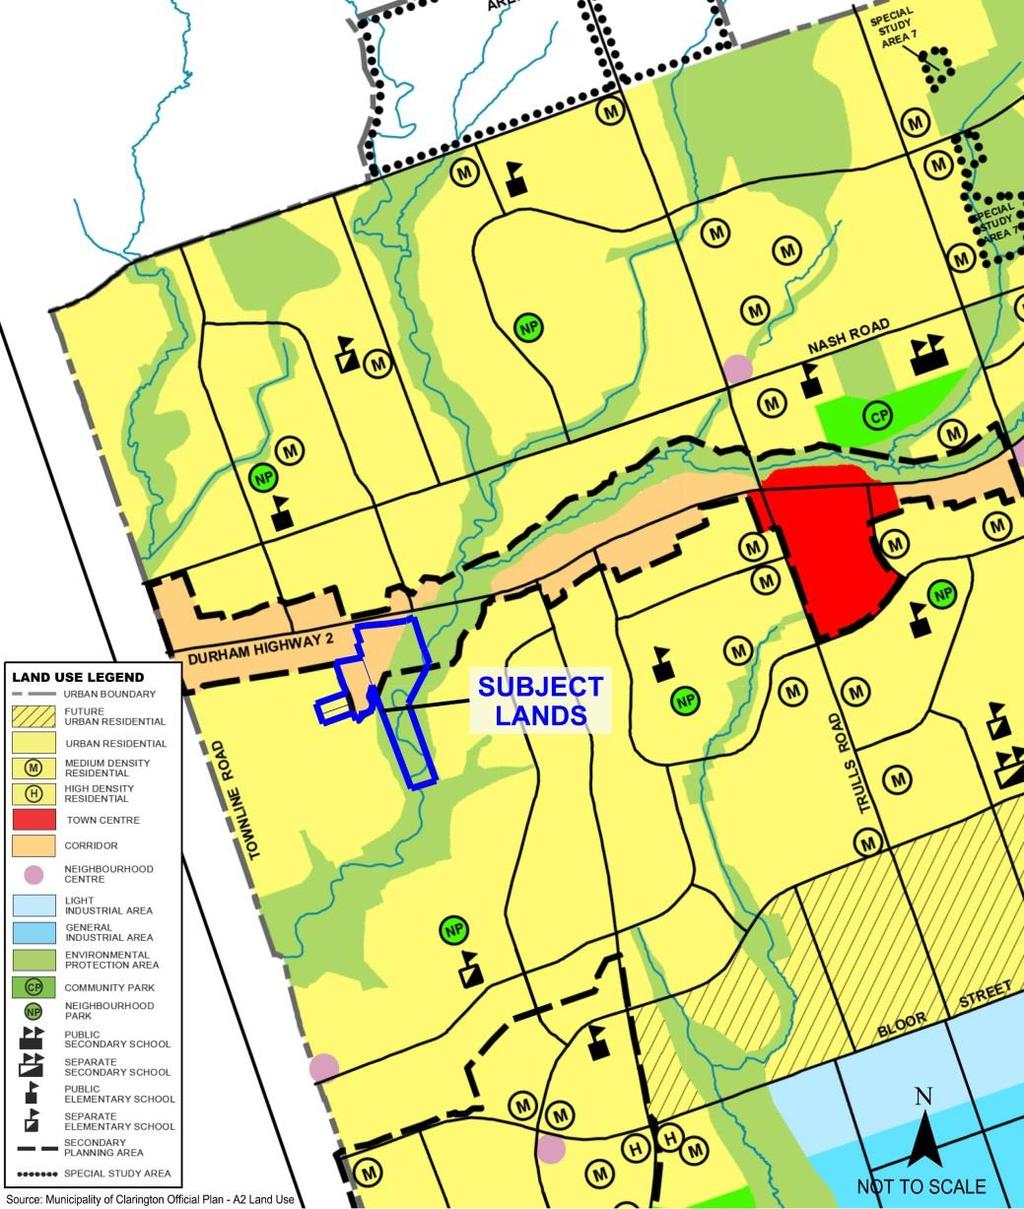 Municipality of Clarington Official Plan Existing Official Plan Designation Land Use Designations: Corridor, Urban Residential & Environmental Protection Area Corridor: The Municipality of Clarington